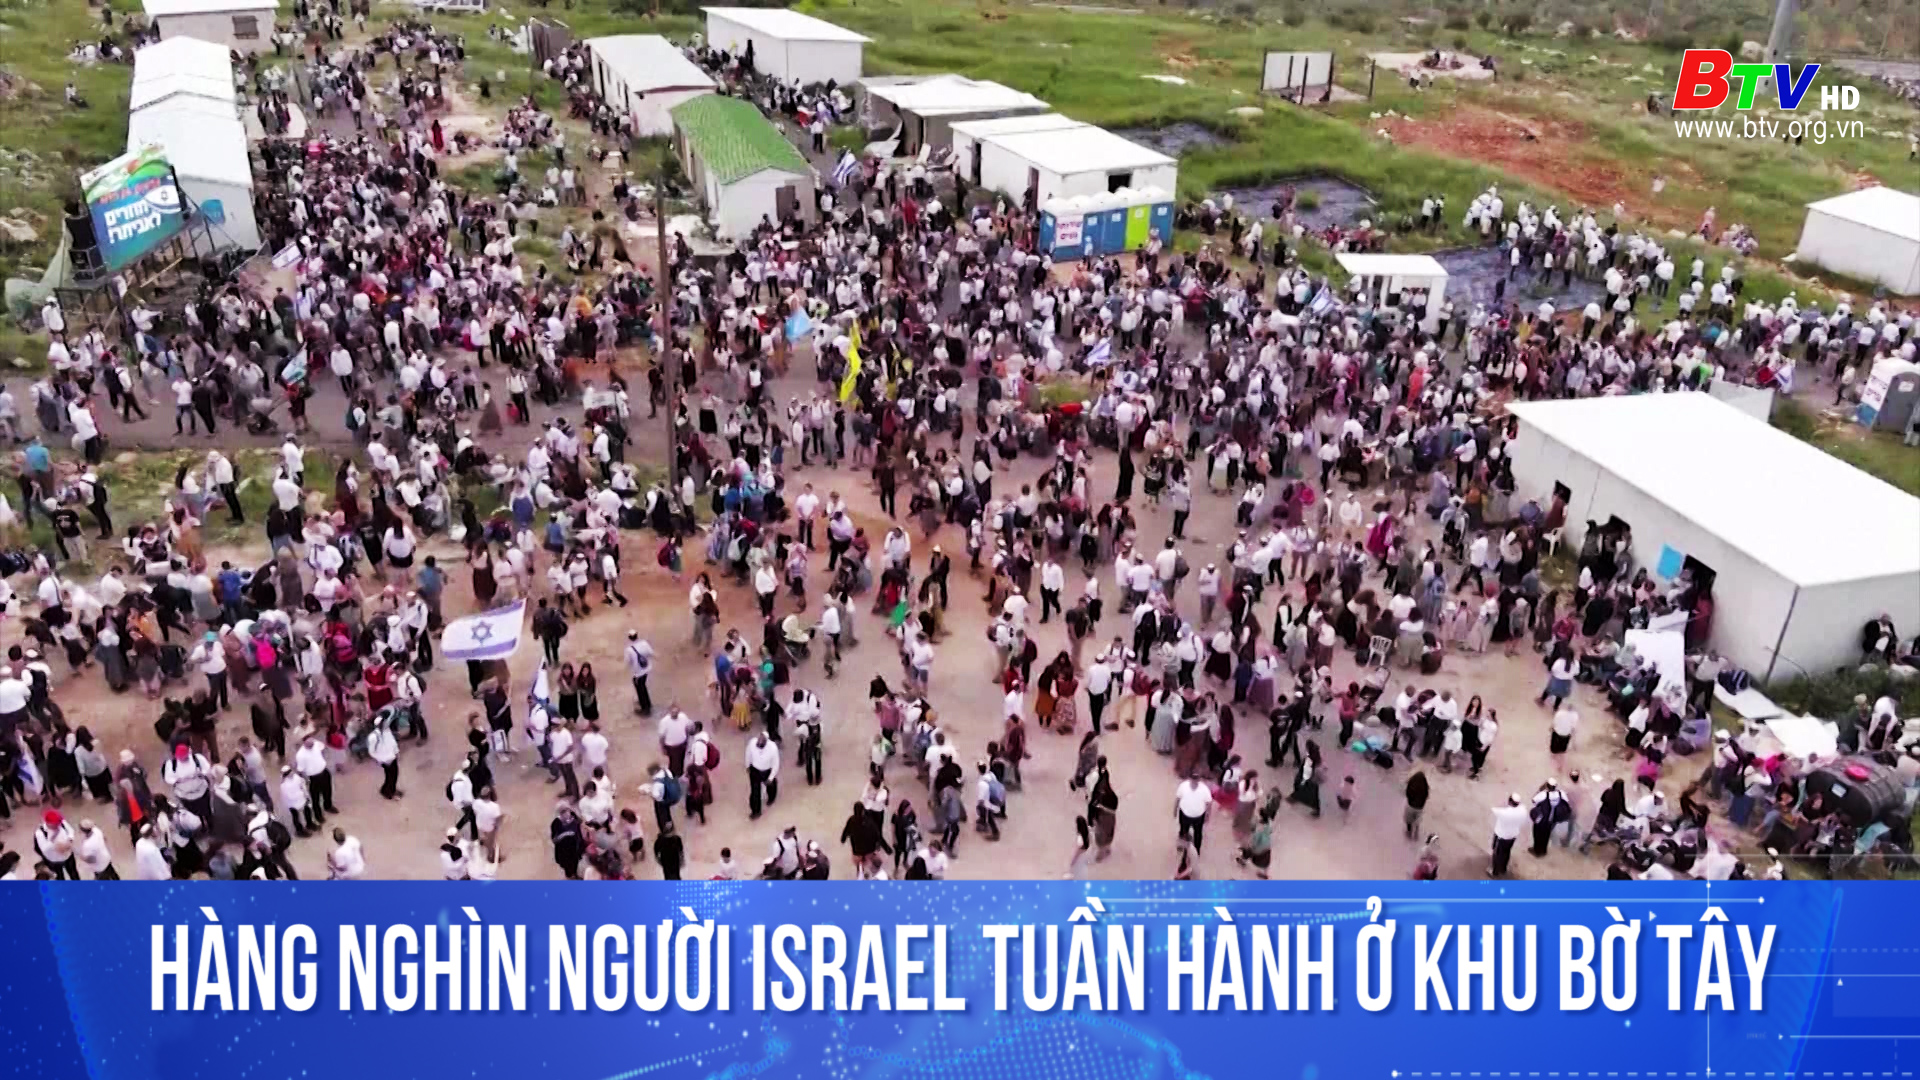 Hàng nghìn người Israel tuần hành ở khu Bờ Tây